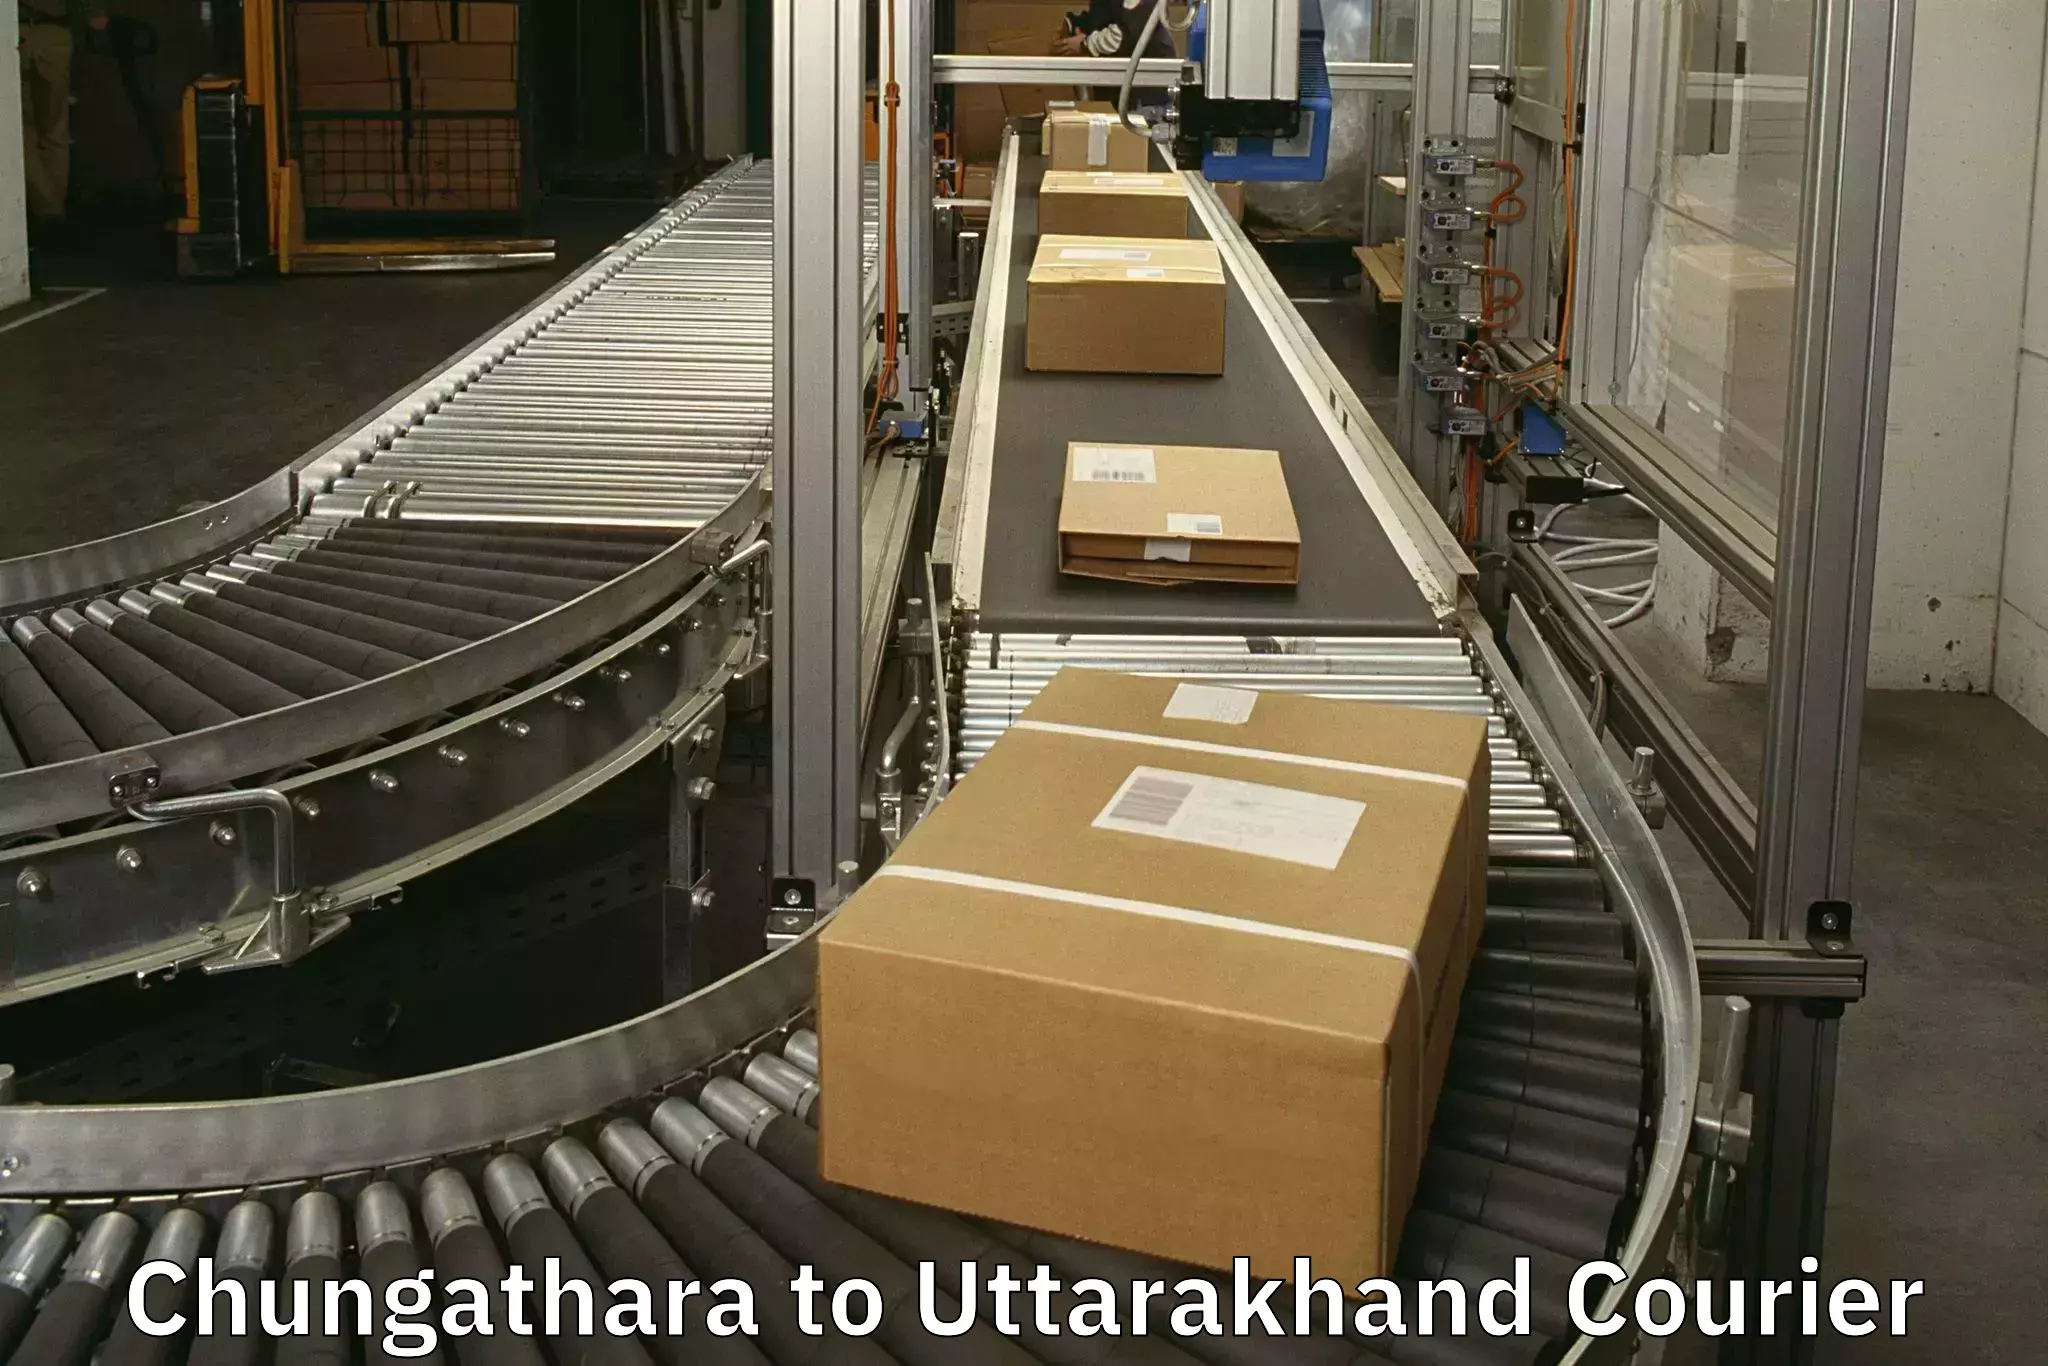 Baggage transport services Chungathara to Uttarakhand